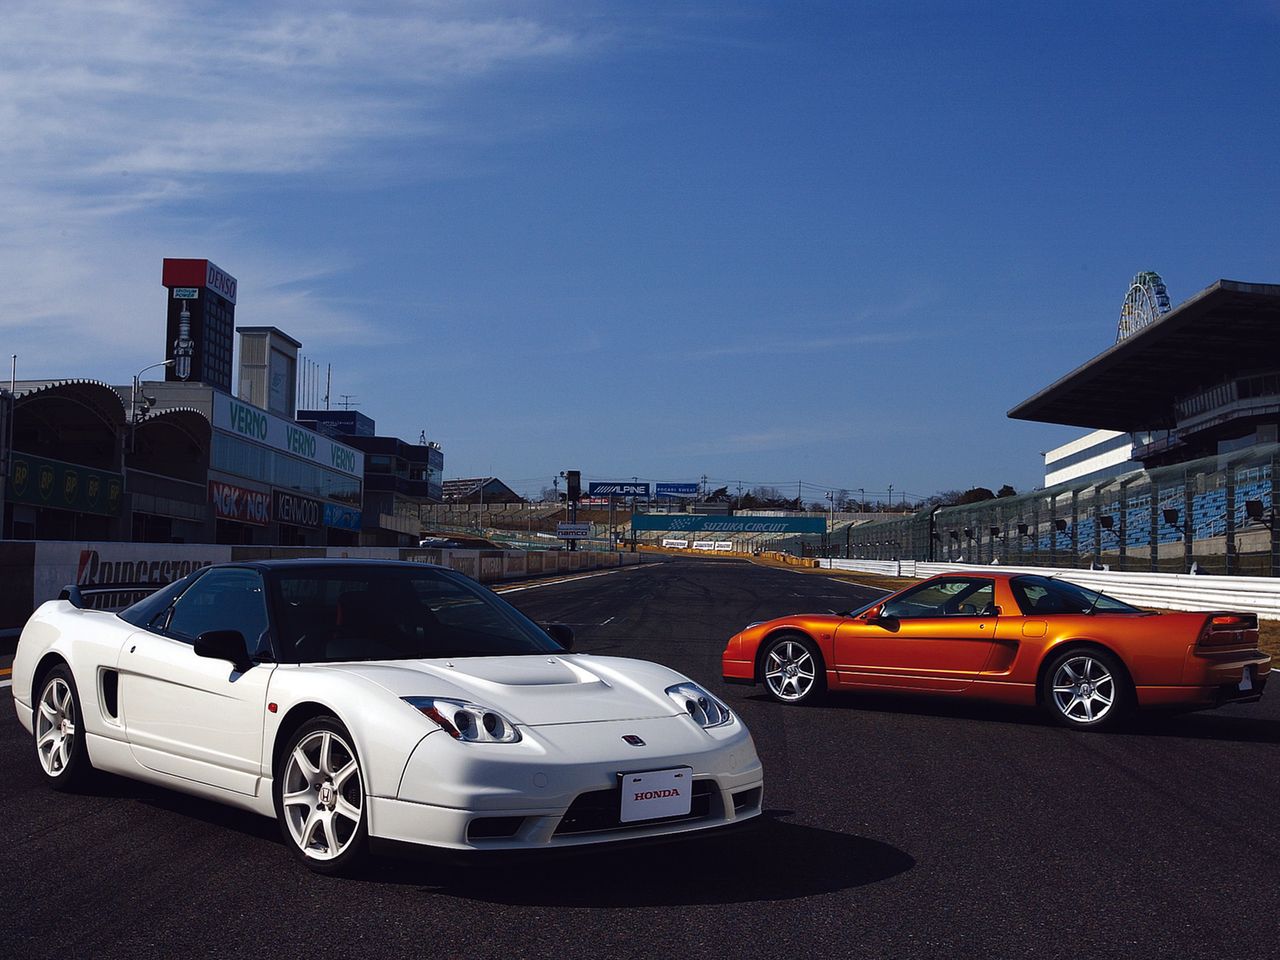 Honda NSX nie była wielką gwiazdą kina, ale zrobiła ogromną karierę w grze Gran Turismo na Playstation, gdzie zawsze była najszybszym samochodem w swojej klasie. Facelifting przeprowadzono w 2001 roku, a Gran Turismo zadebiutowało w 1997 roku. Dlatego na "przejażdżkę" nową Hondą NSX trzeba było czekać aż do debiutu trzeciej części rozgrywki. Teraz czekamy na premierę drugiej generacji sportowej Hondy i mamy nadzieję, że będziemy mieli okazję ją przetestować w świecie rzeczywistym.